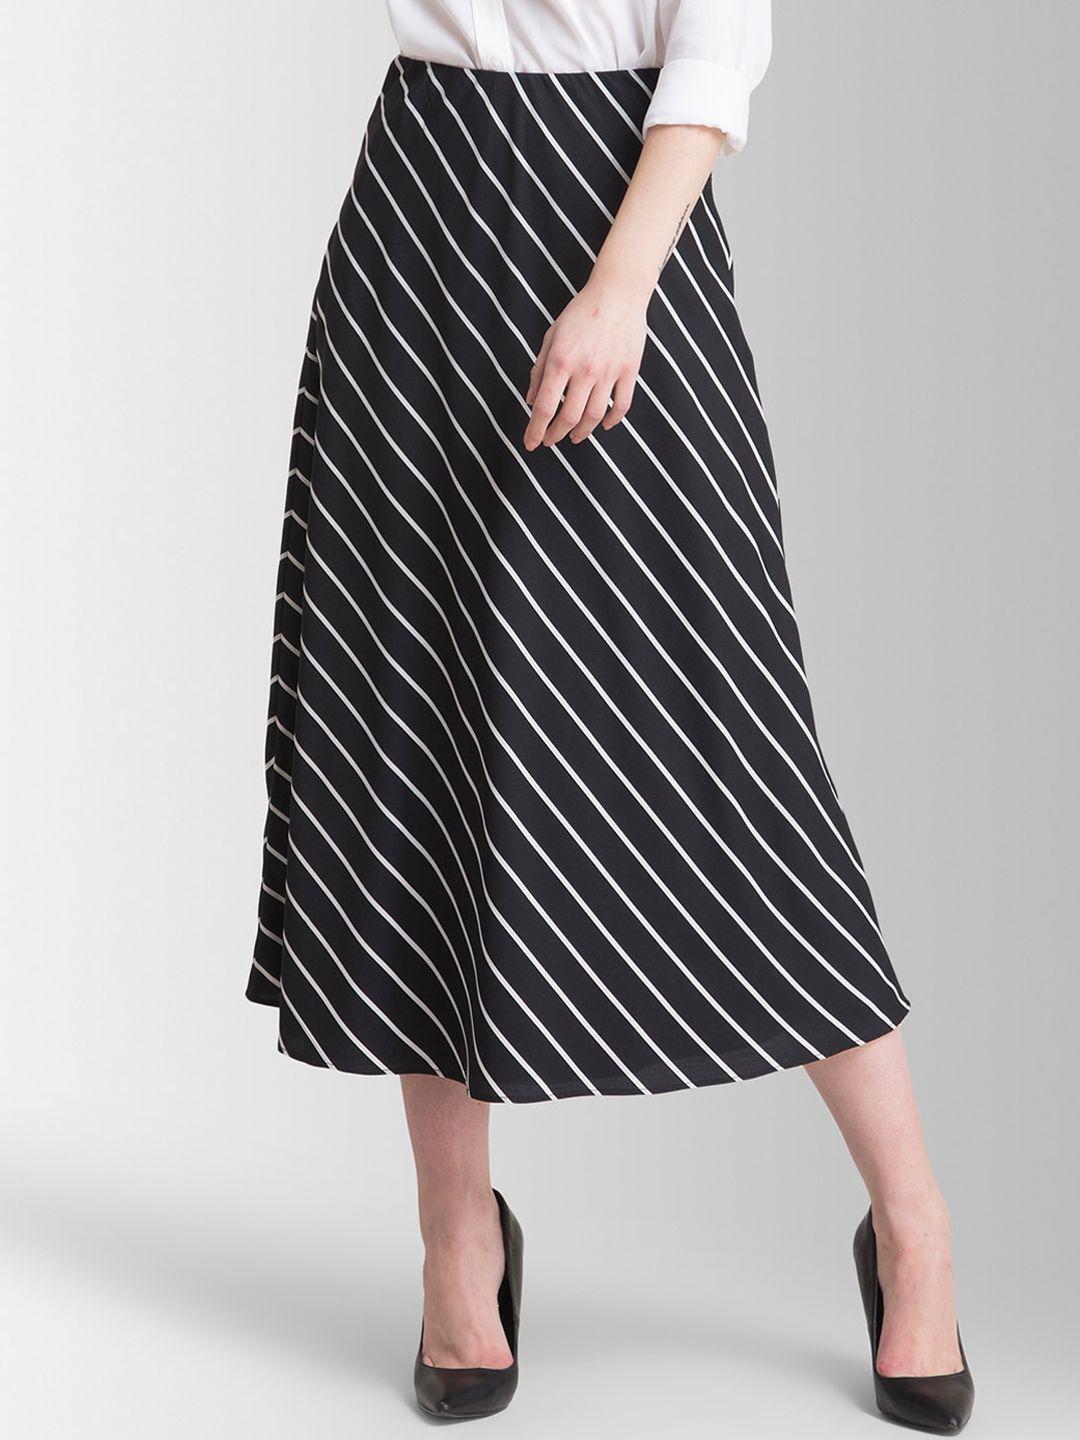 fablestreet women black & white striped a-line midi skirt